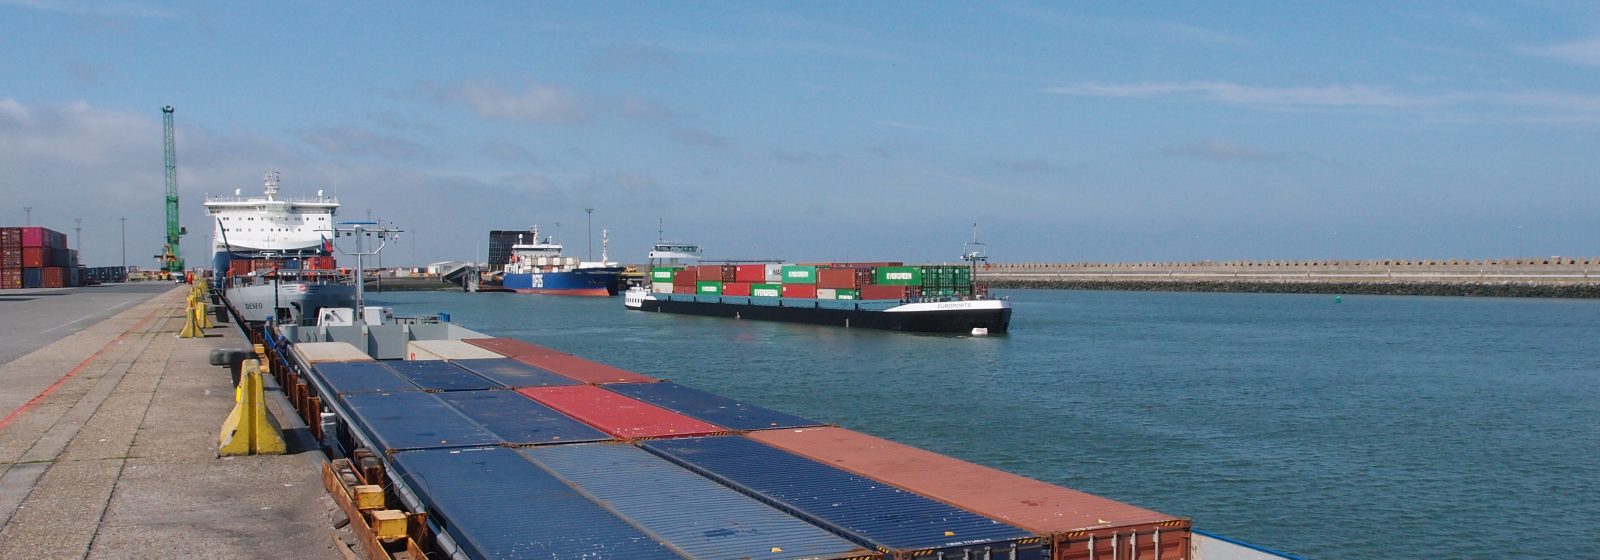 Estuaire vaart met 'Euroports' en 'Polybotes'